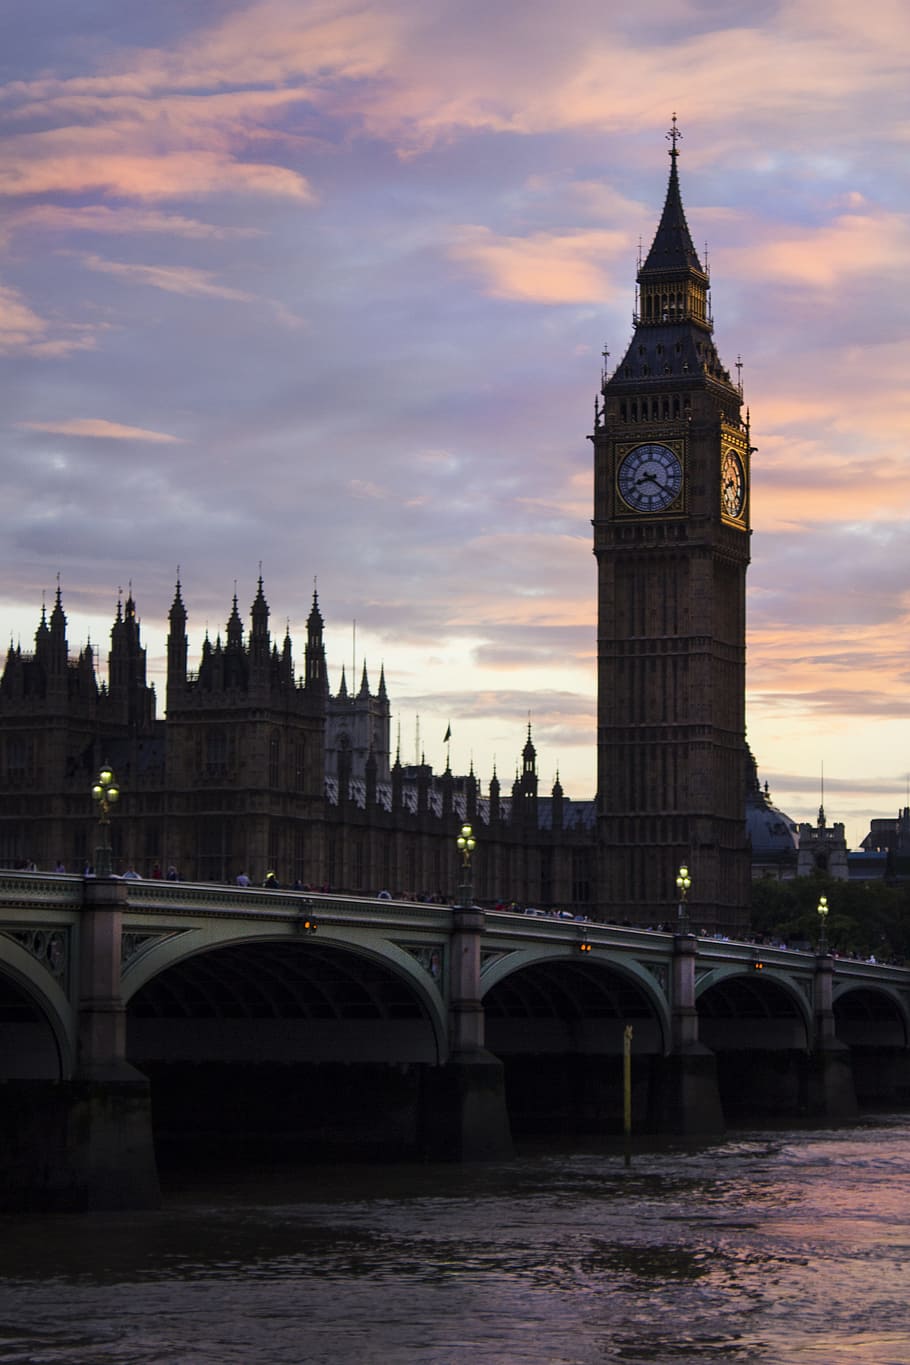 Londres, arquitectura, puente, centro, monumentos, puesta de sol, paisaje, londres - inglaterra, casas del parlamento - londres, río thames